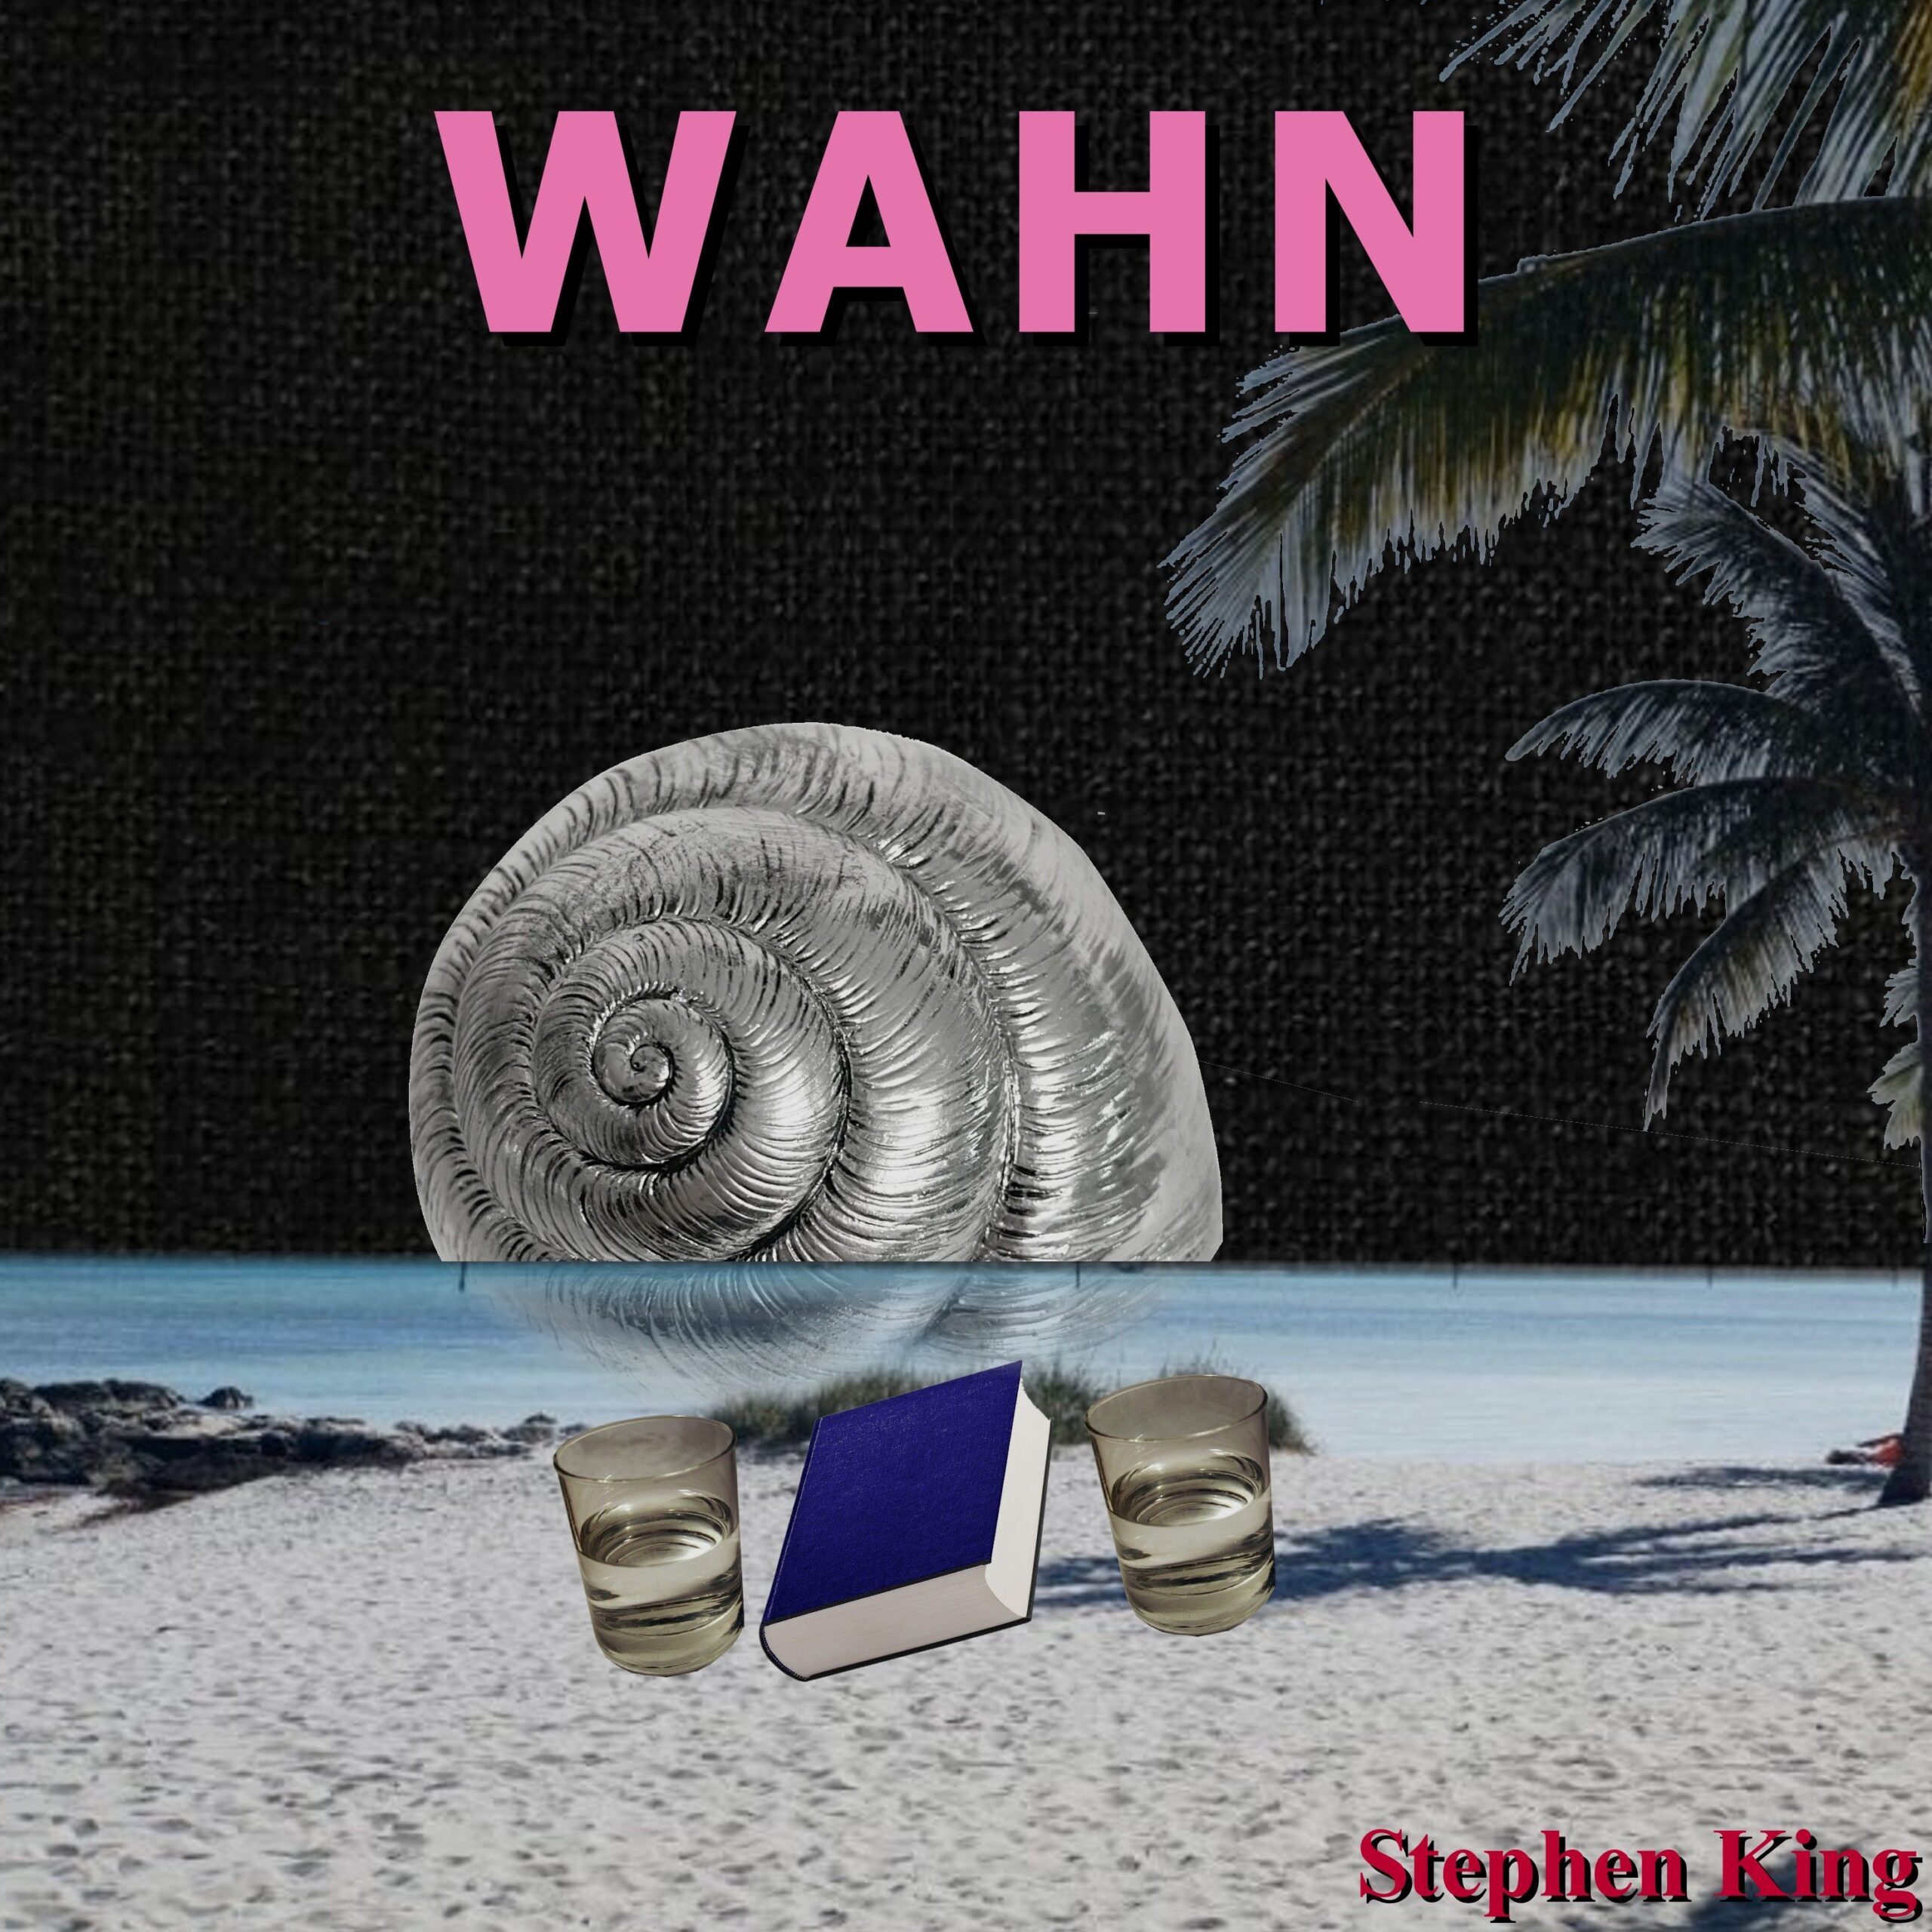 Coverbild: Titel "Wahn" in Rosa vor einer Strandlandschaft mit einer überdimensionierten Muschel